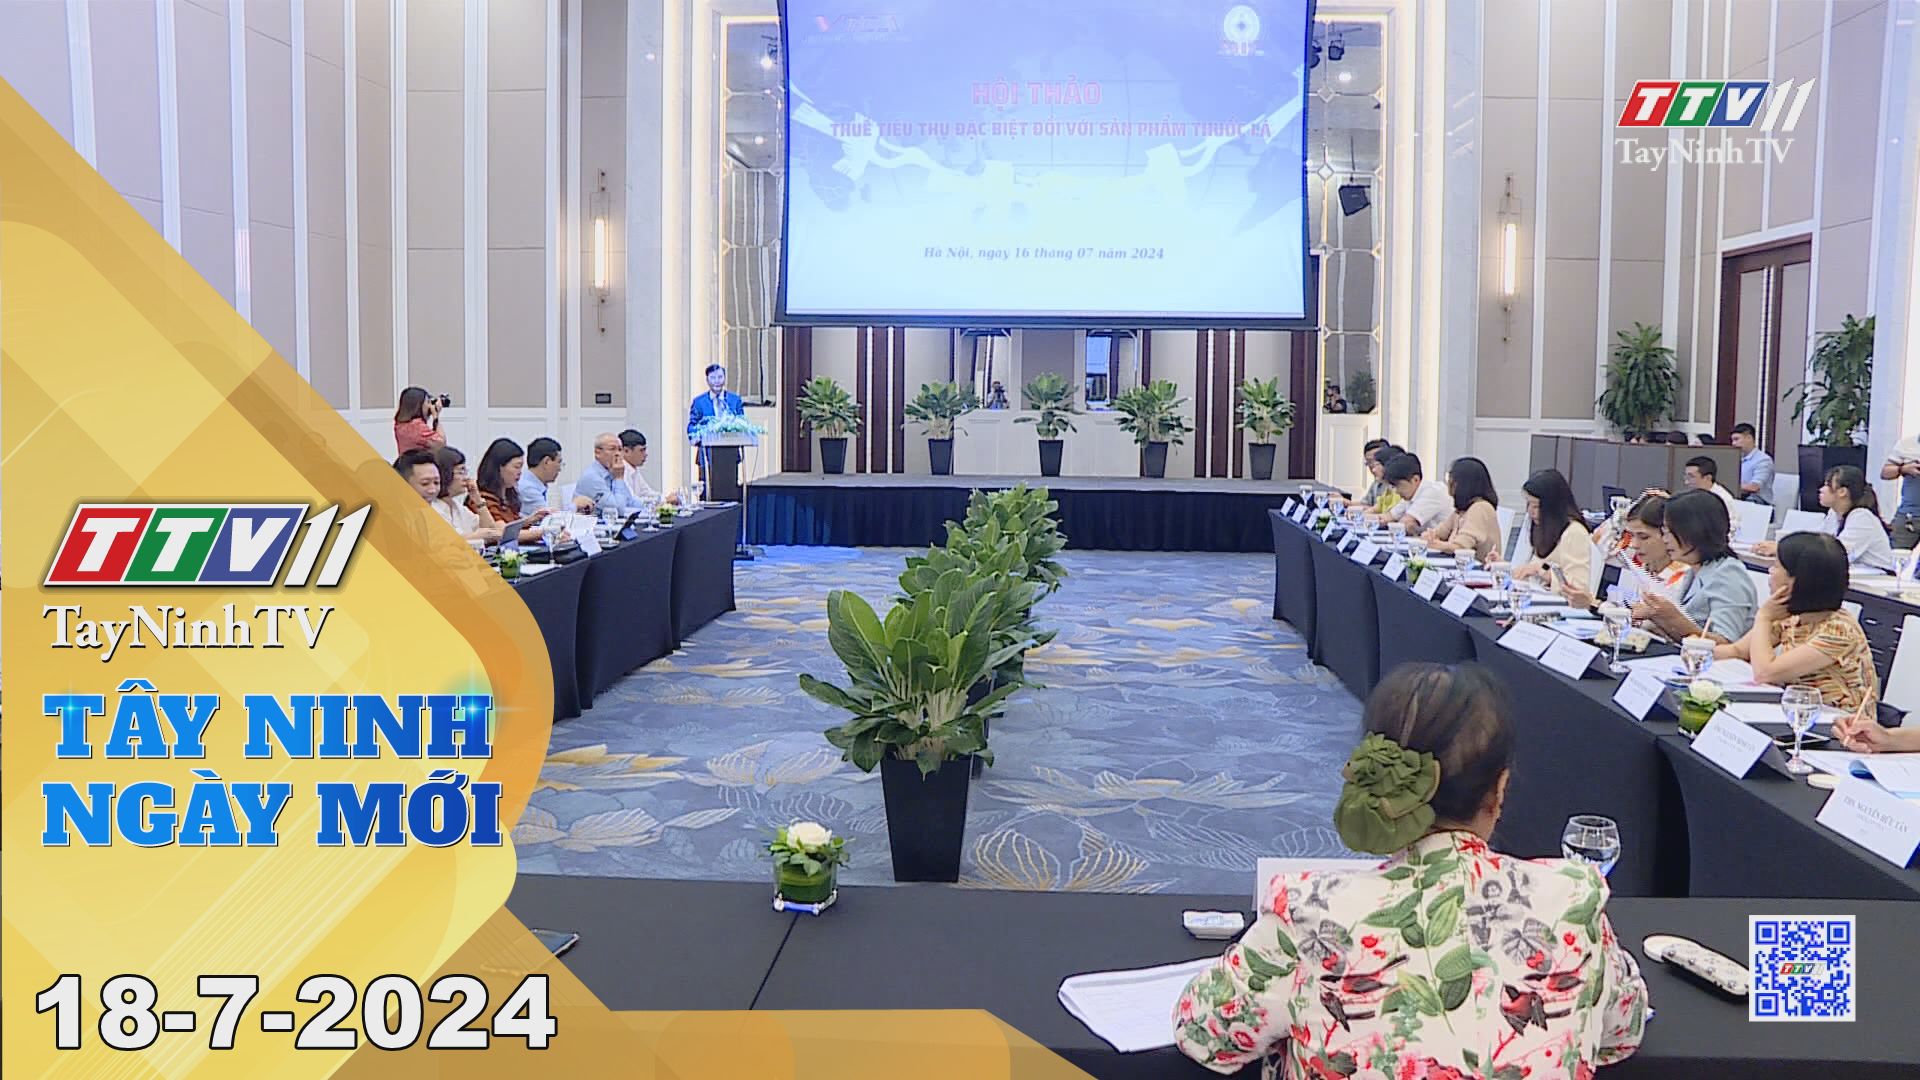 Tây Ninh ngày mới 18-7-2024 | Tin tức hôm nay | TayNinhTV